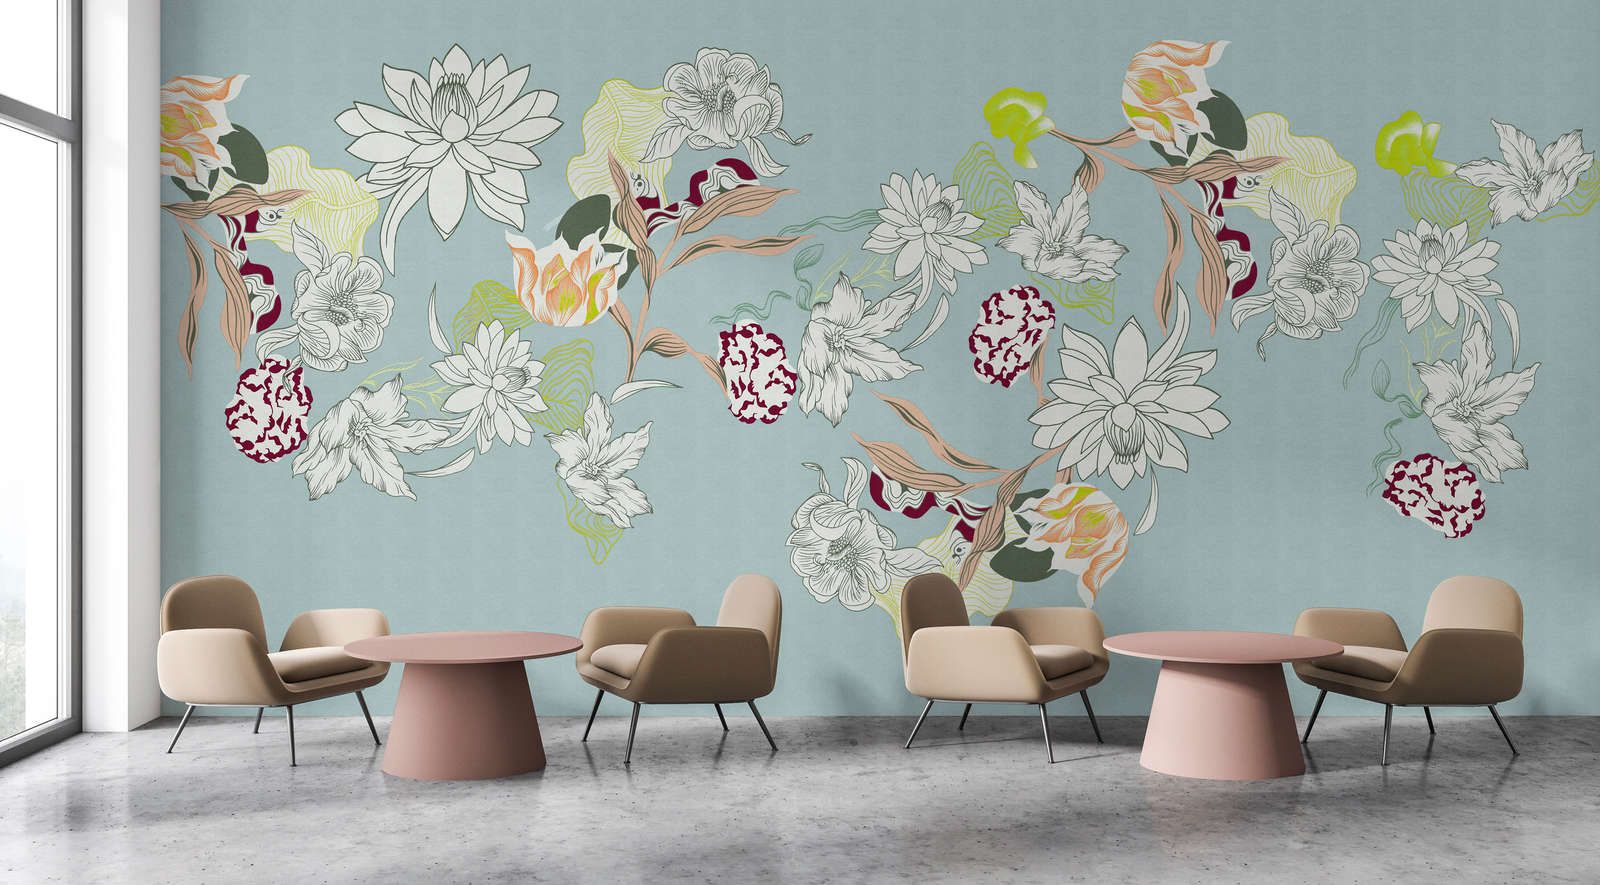             Papel pintado »botany 2« - Motivos florales abstractos con toques verdes sobre una sutil textura de lino - Material sin tejer de calidad superior, liso y ligeramente brillante.
        